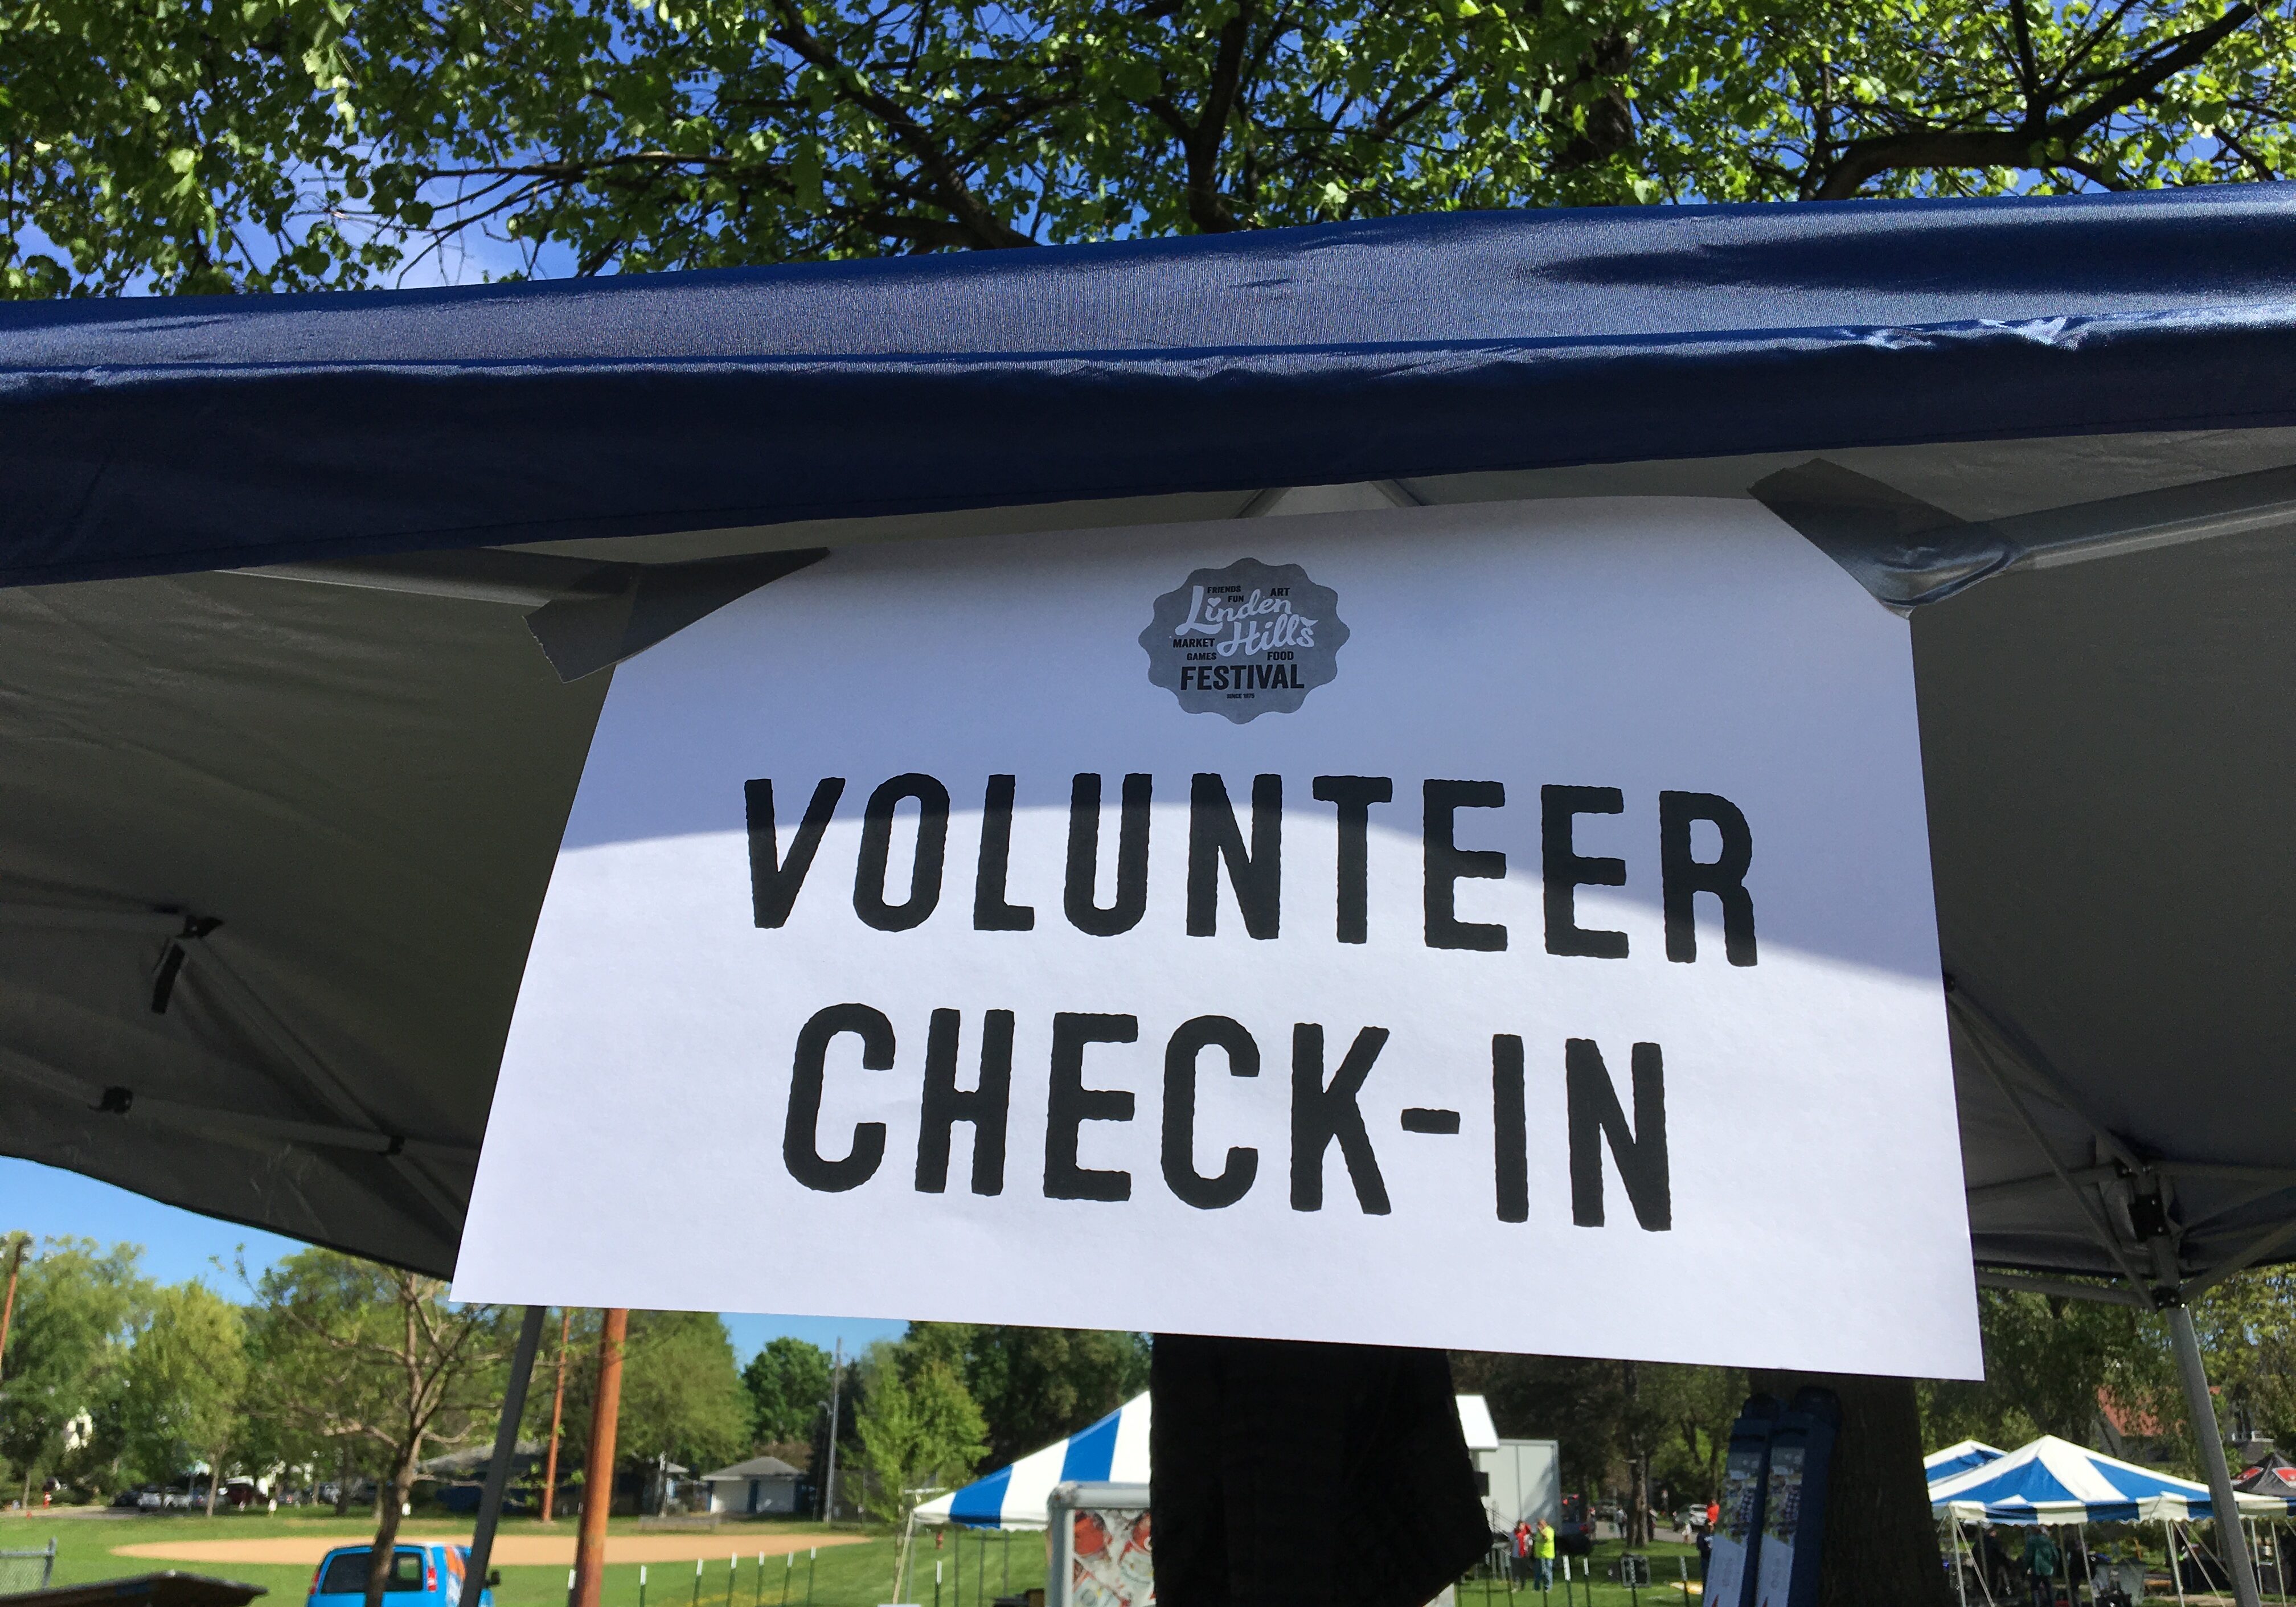 Volunteer Check-in sign at Linden Hills Festival